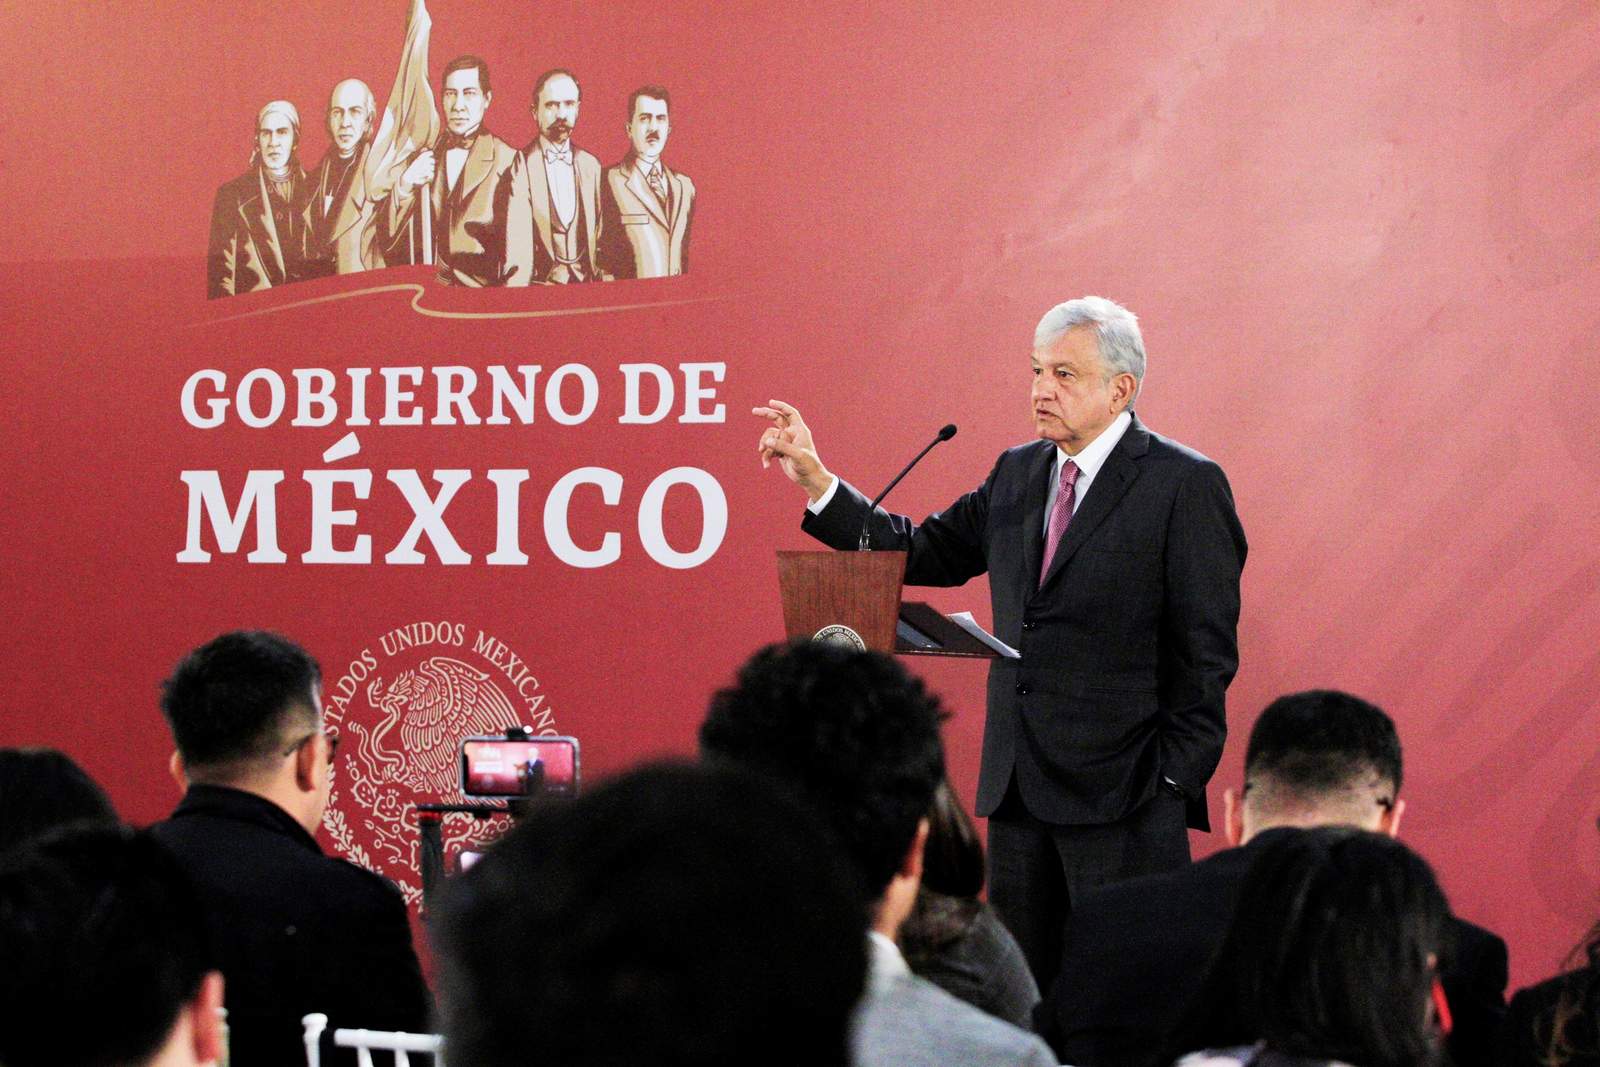 El presidente de la República, Andrés Manuel López Obrador, afirmó que el gobierno federal no se confrontará con los gobernadores que no están de acuerdo con su estrategia de seguridad. (NOTIMEX)